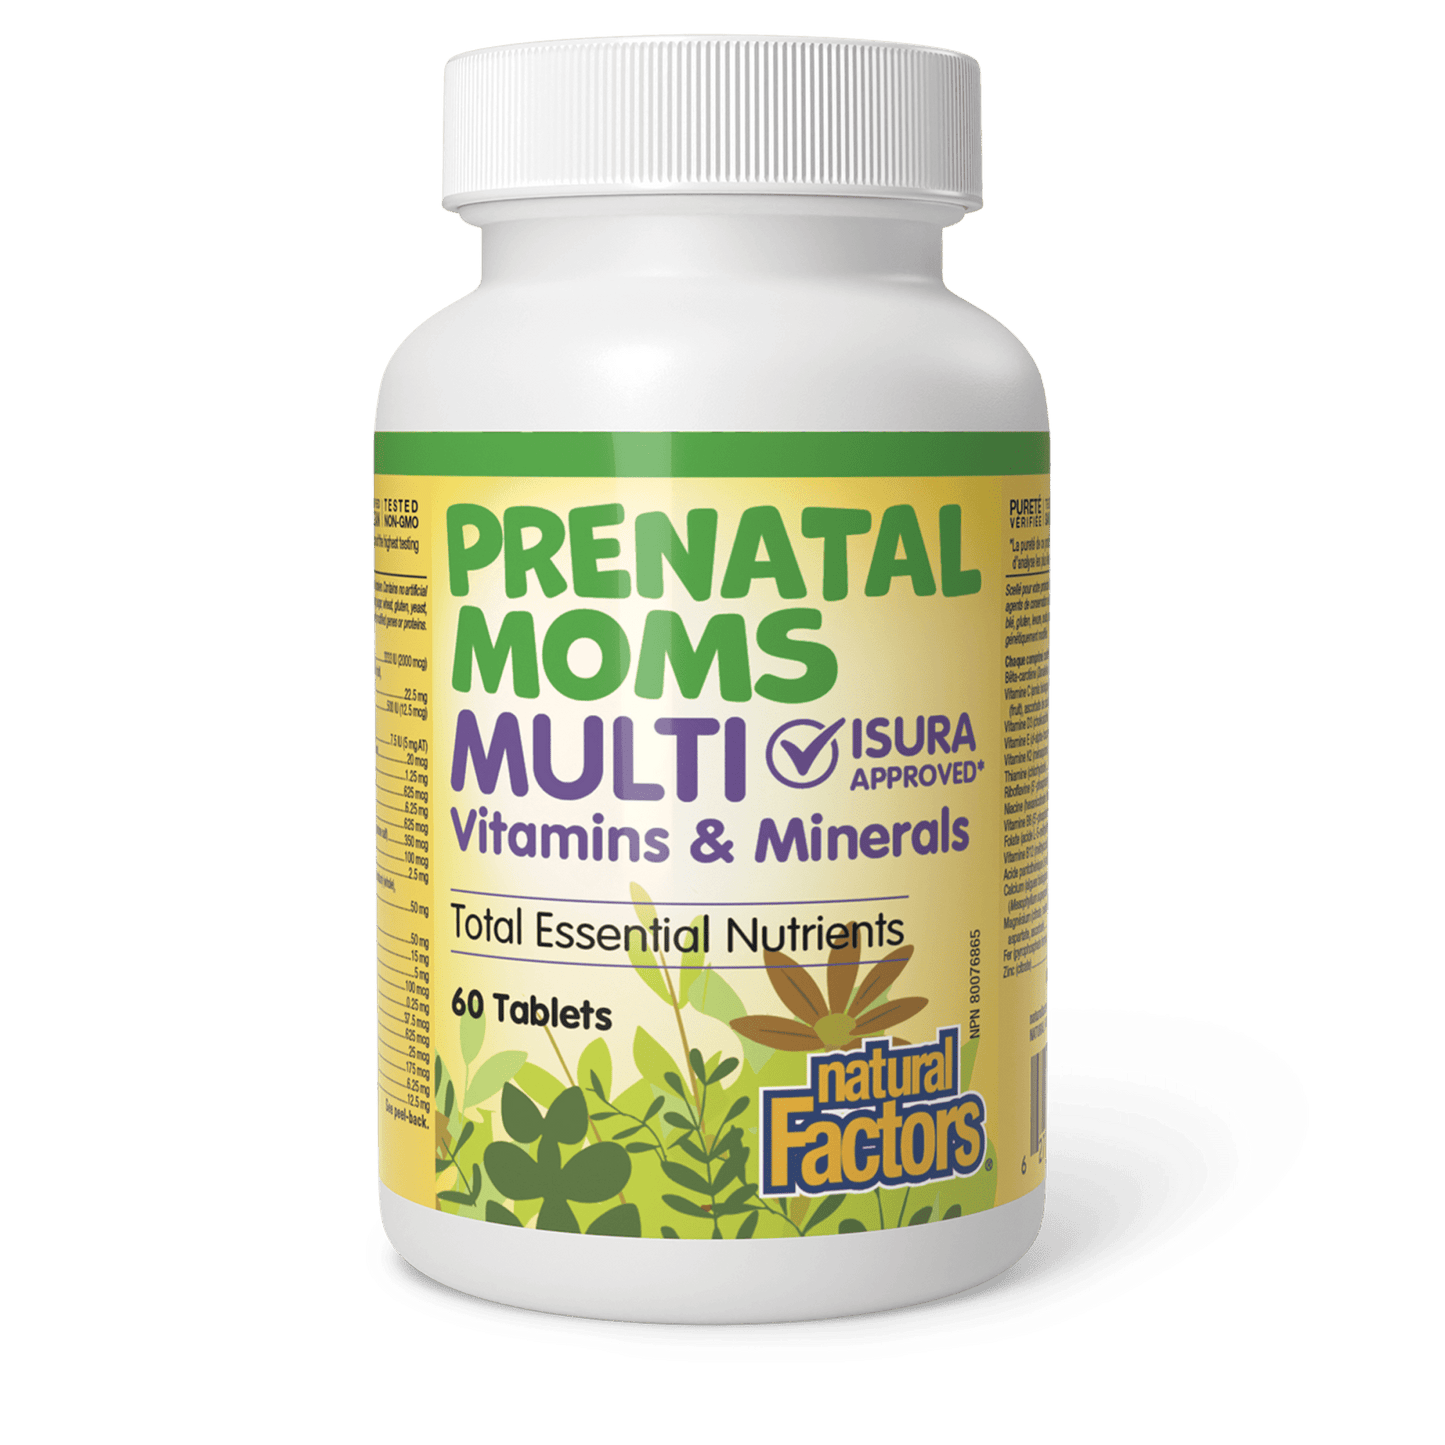 Prenatal Moms Multi Vitamins & Minerals, Big Friends, Natural Factors|v|image|1577